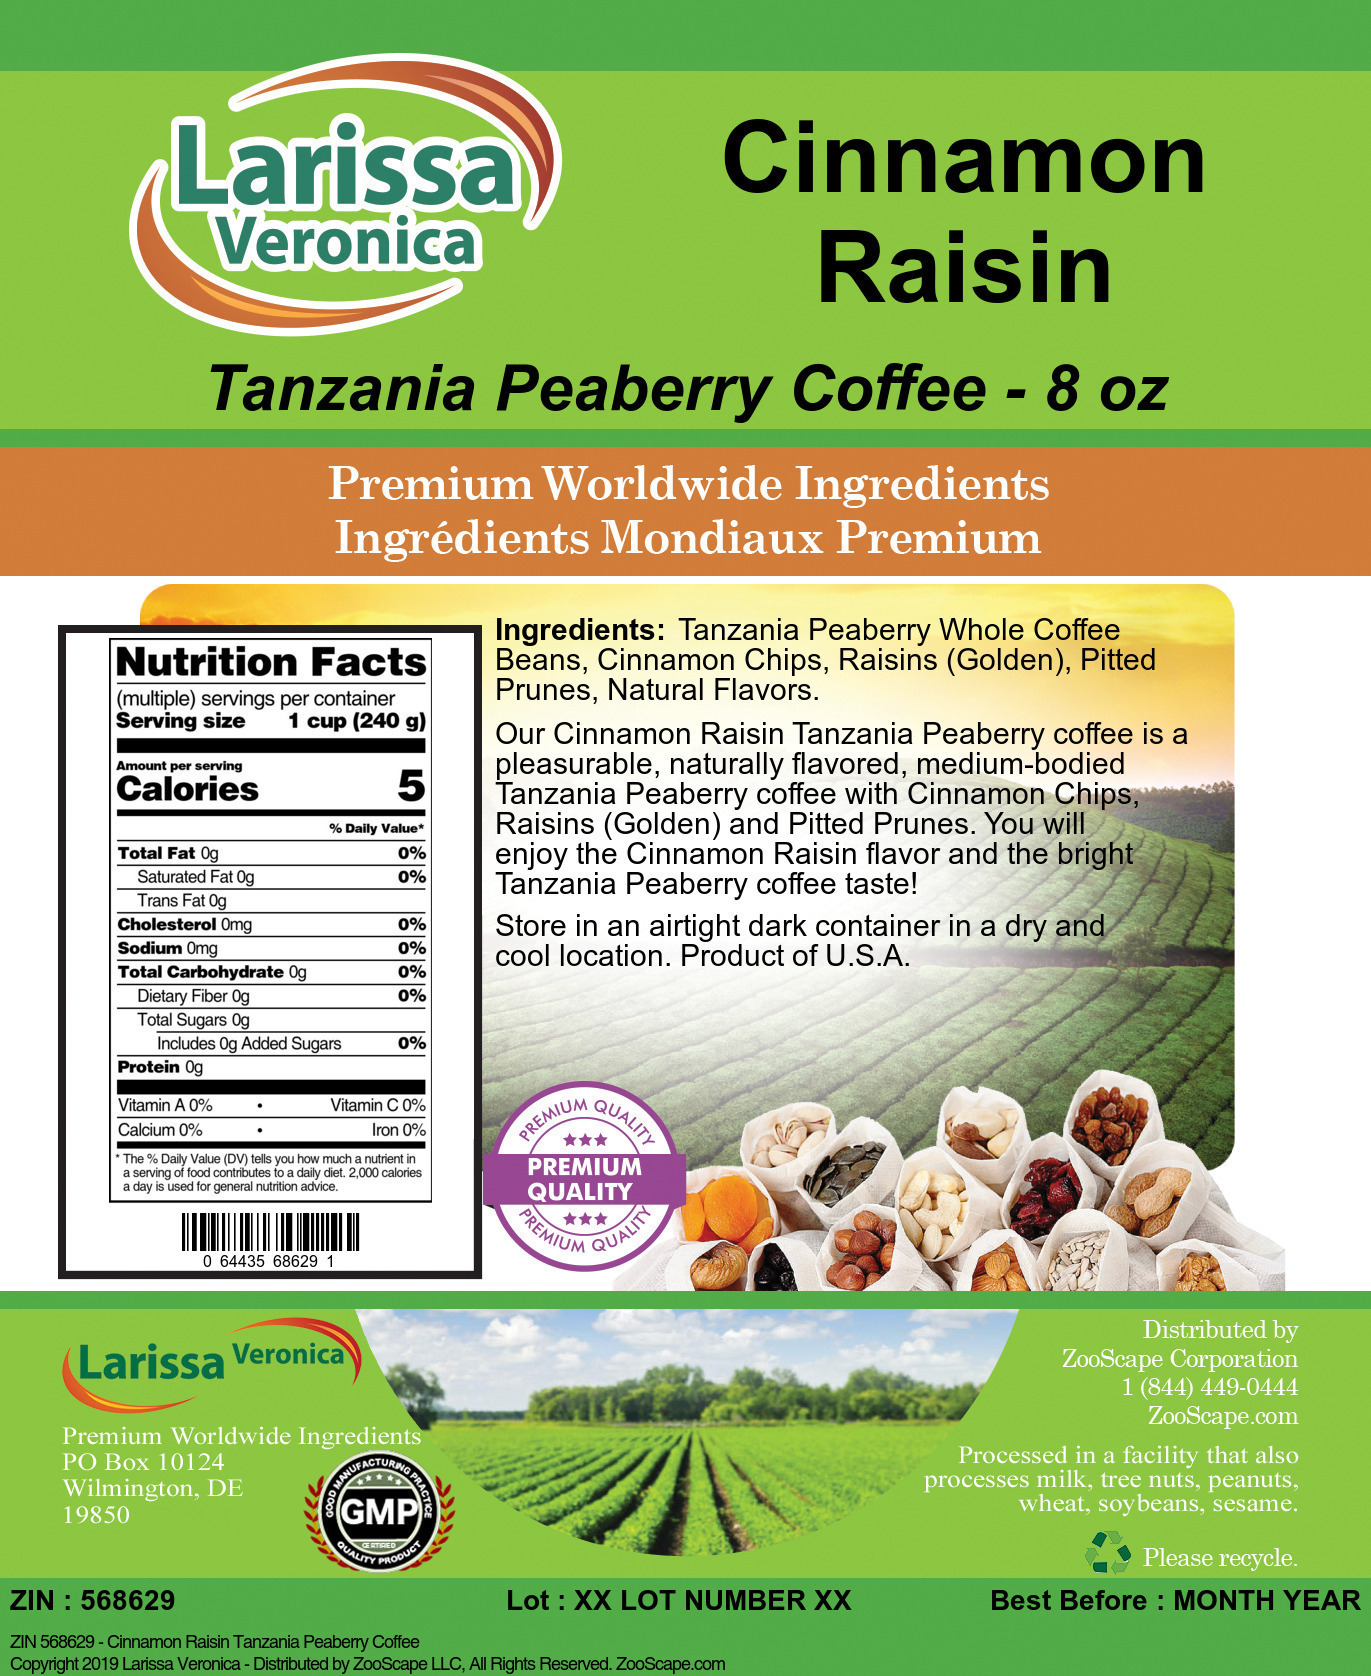 Cinnamon Raisin Tanzania Peaberry Coffee - Label